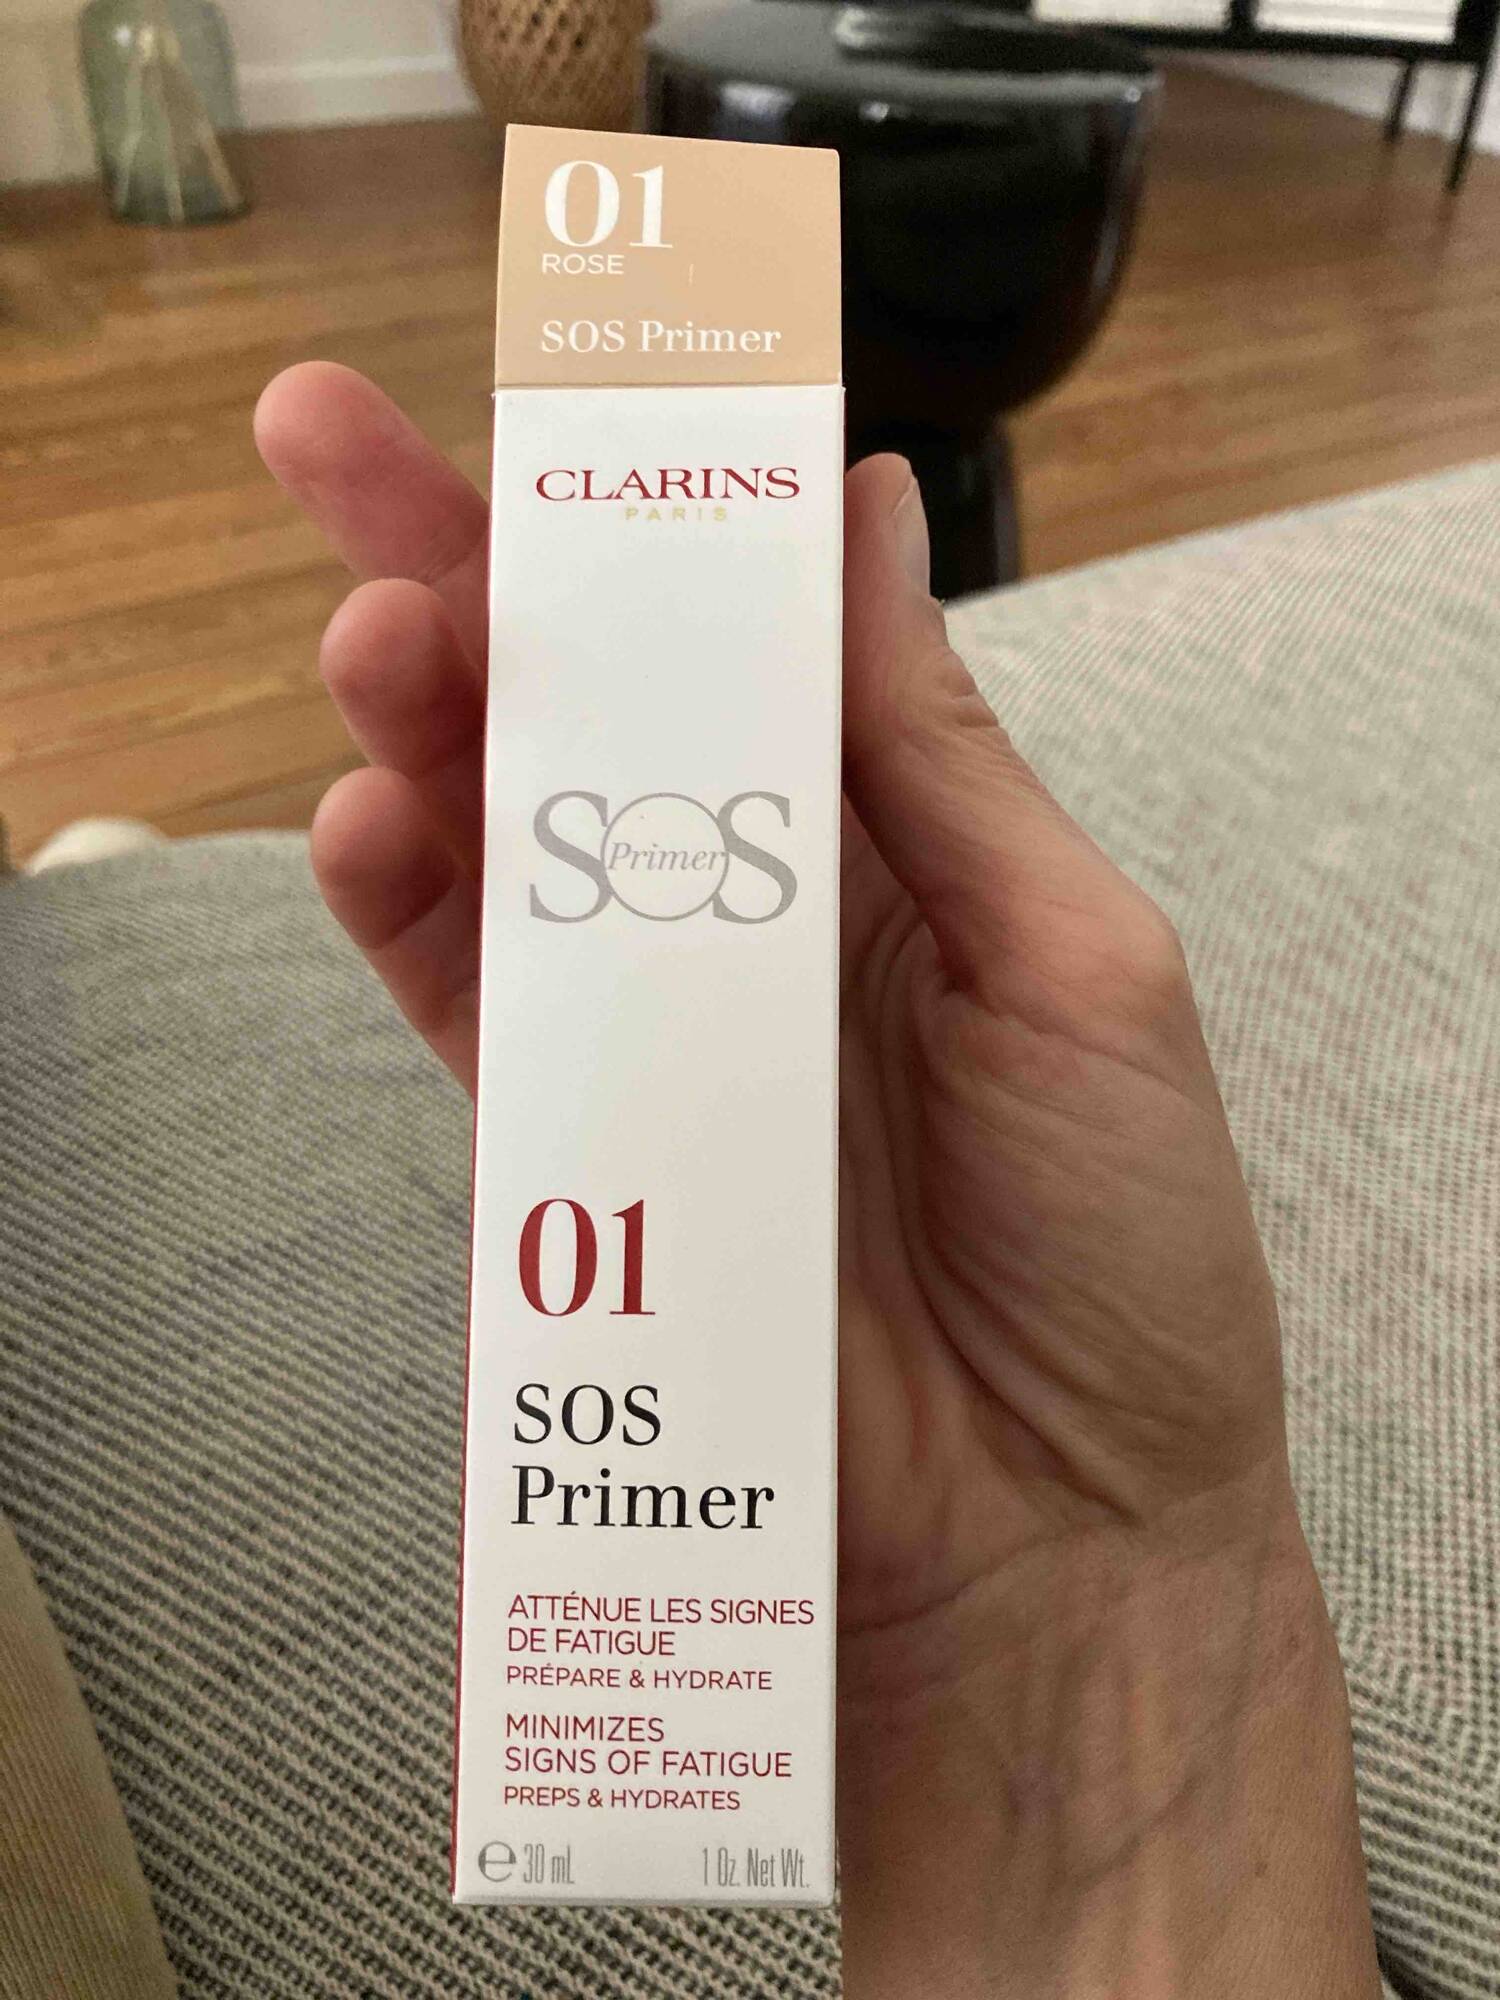 CLARINS - SOS primer 01 - Atténue les signes de fatigue